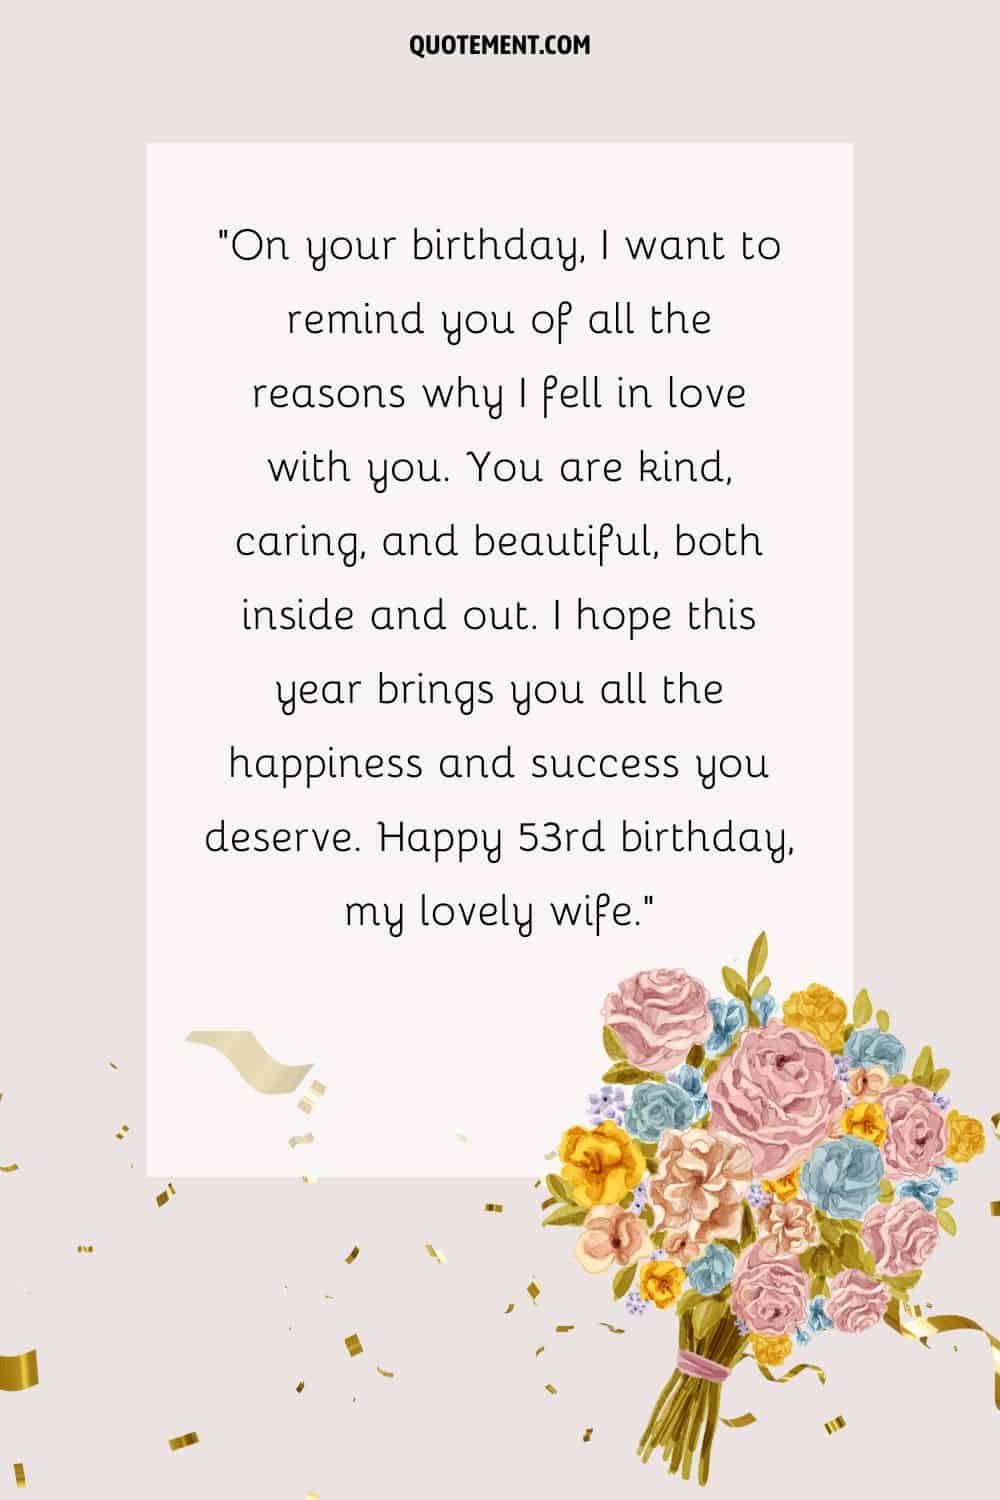 Mensaje romántico para el 53 cumpleaños de una esposa, un ramo de rosas y confeti